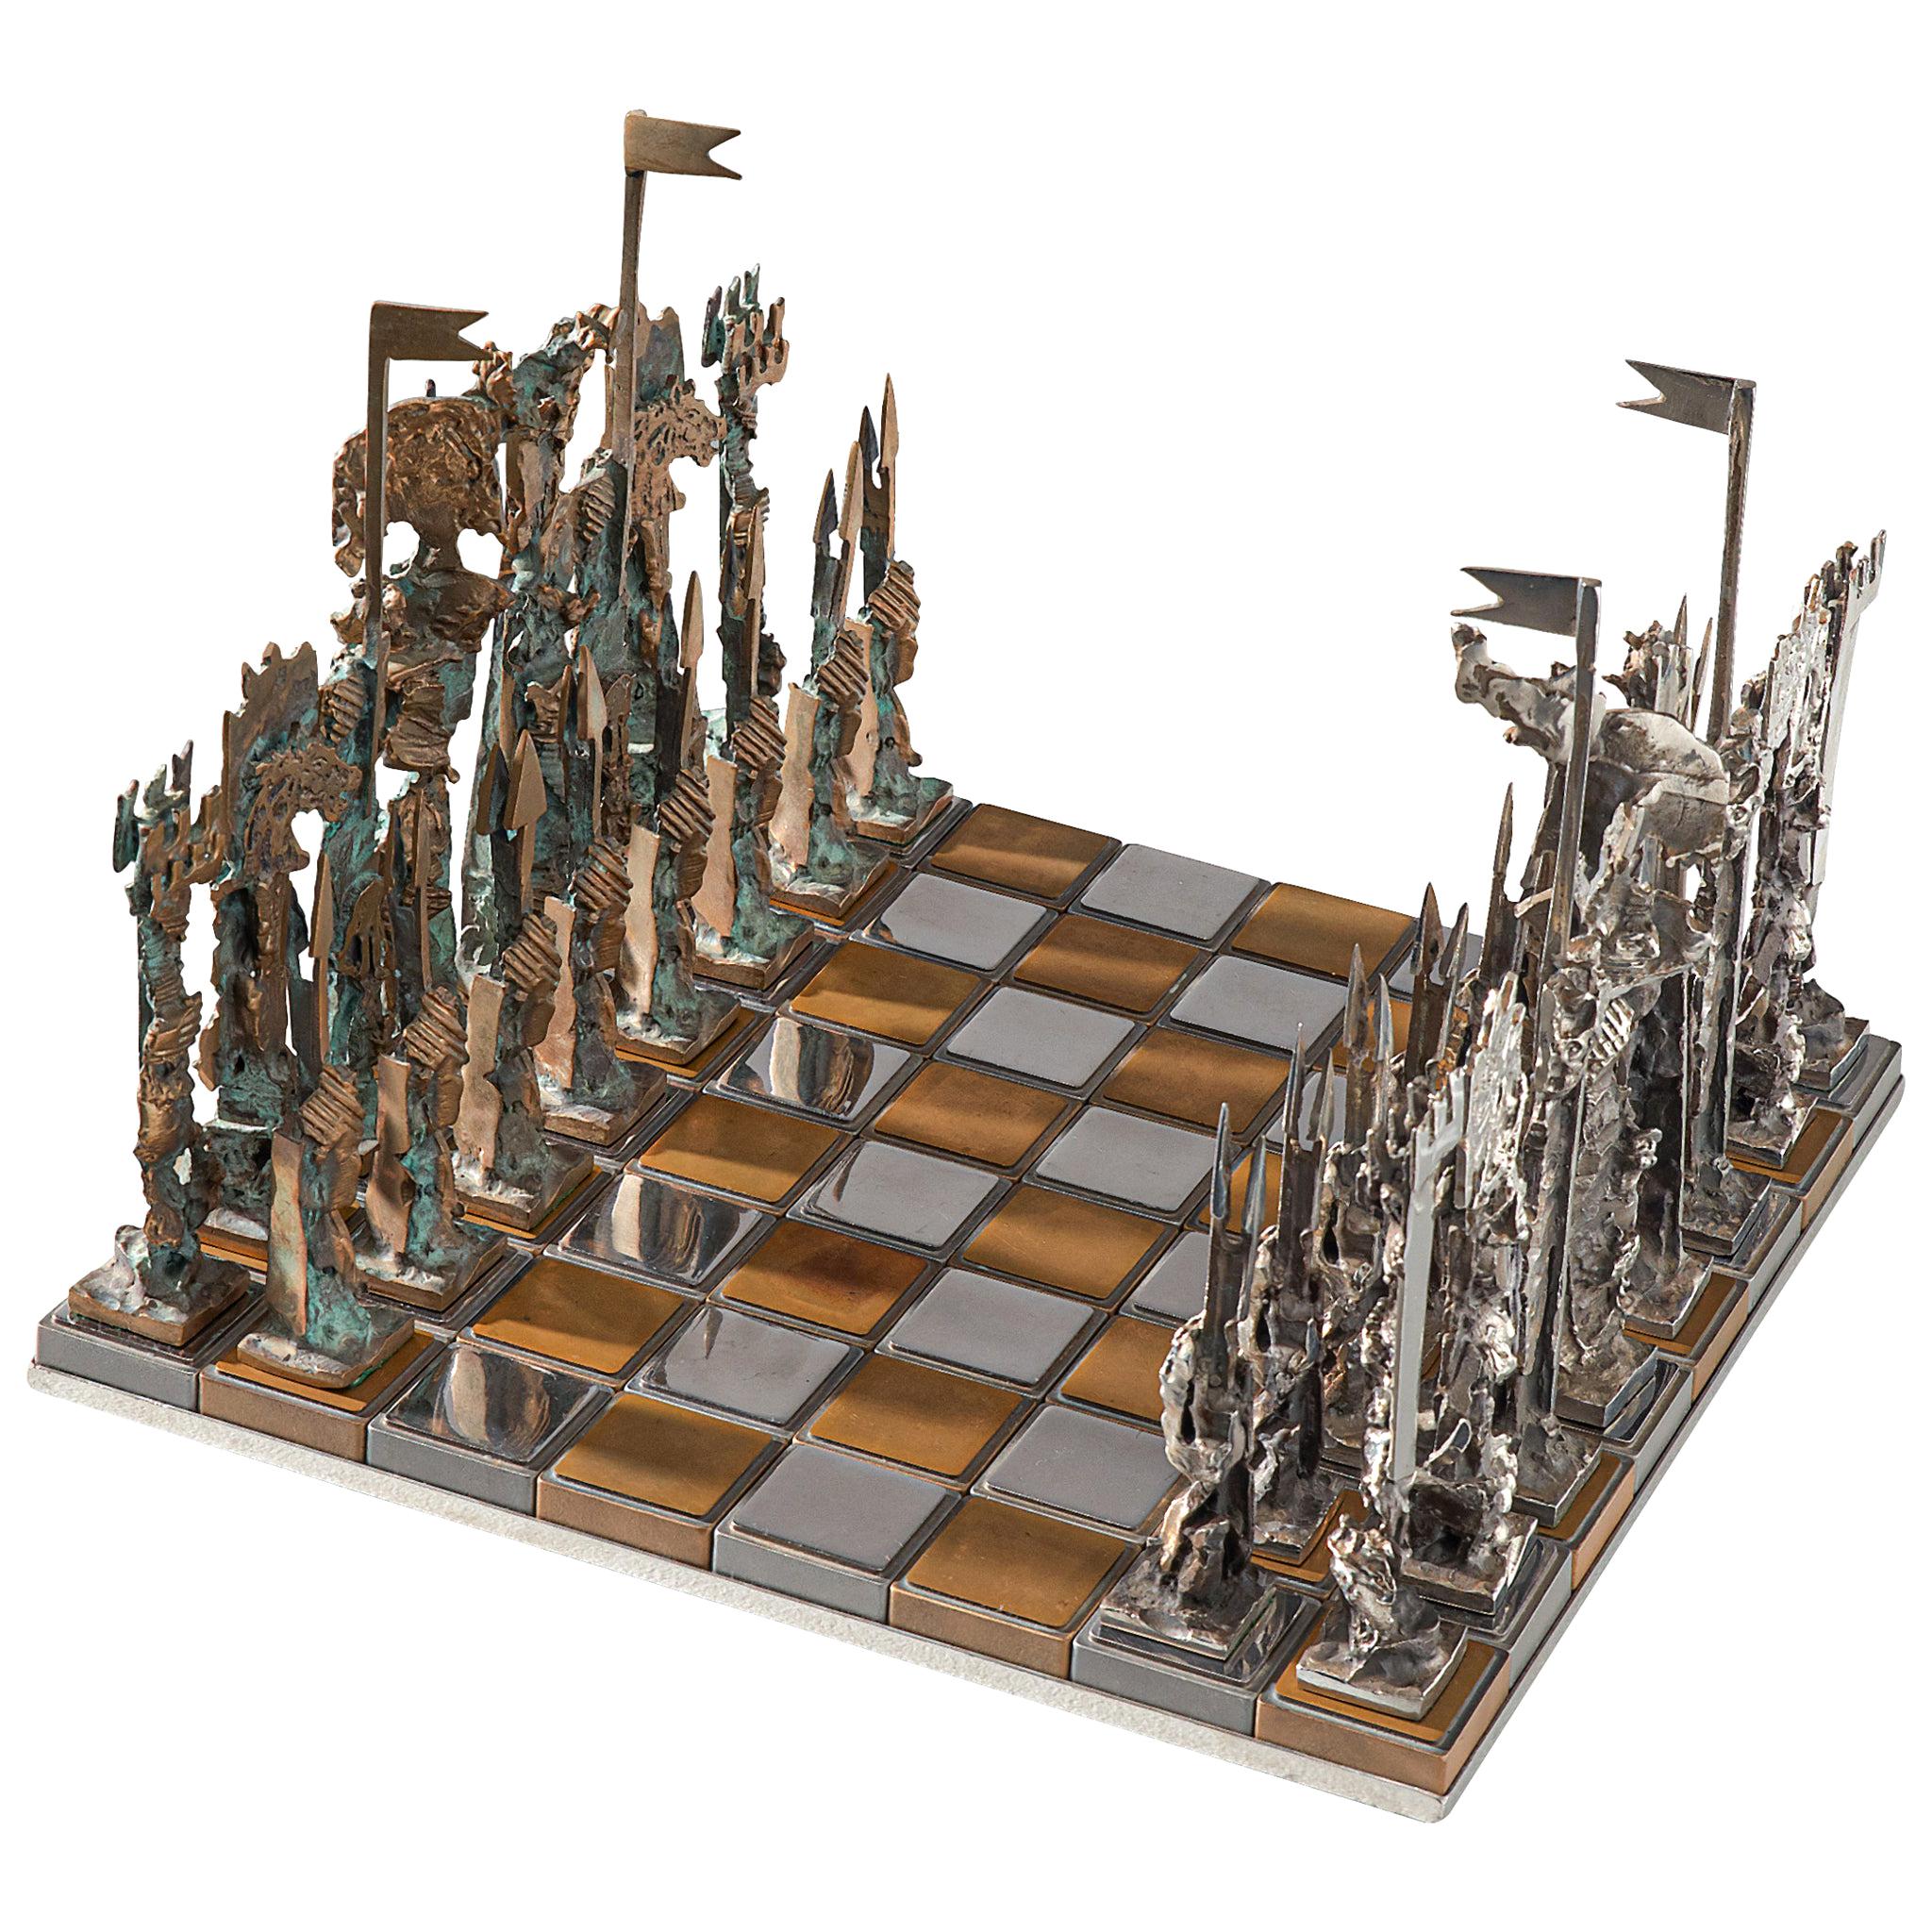 Jeu d'échecs italien sculptural en métal et verre 